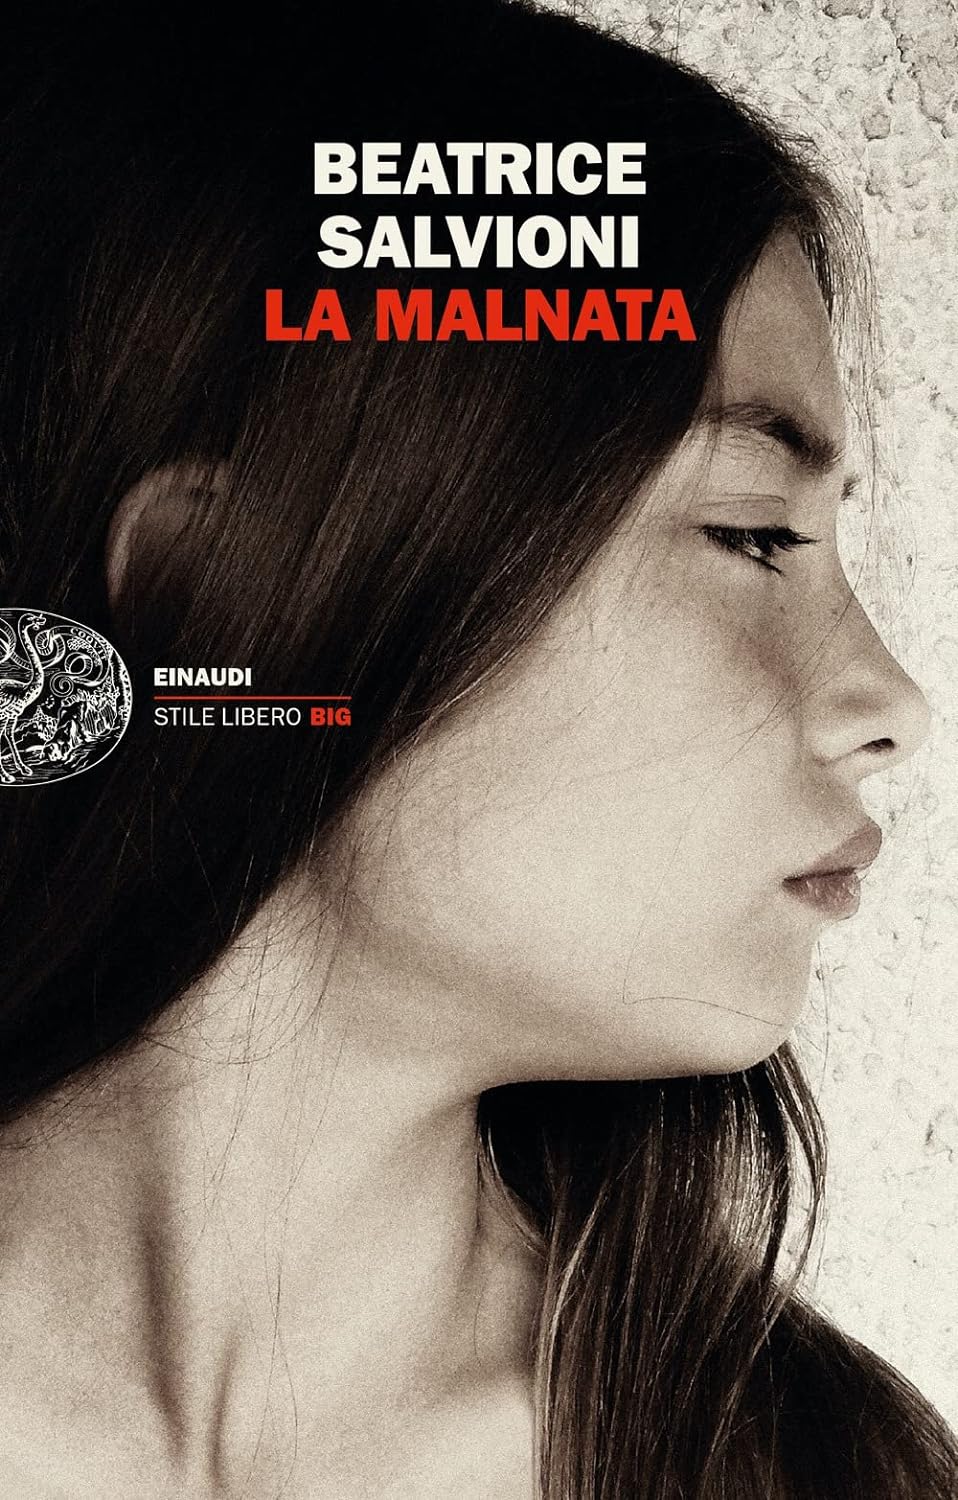 Beatrice Salvioni: La Malnata (Italiano language, Einaudi)